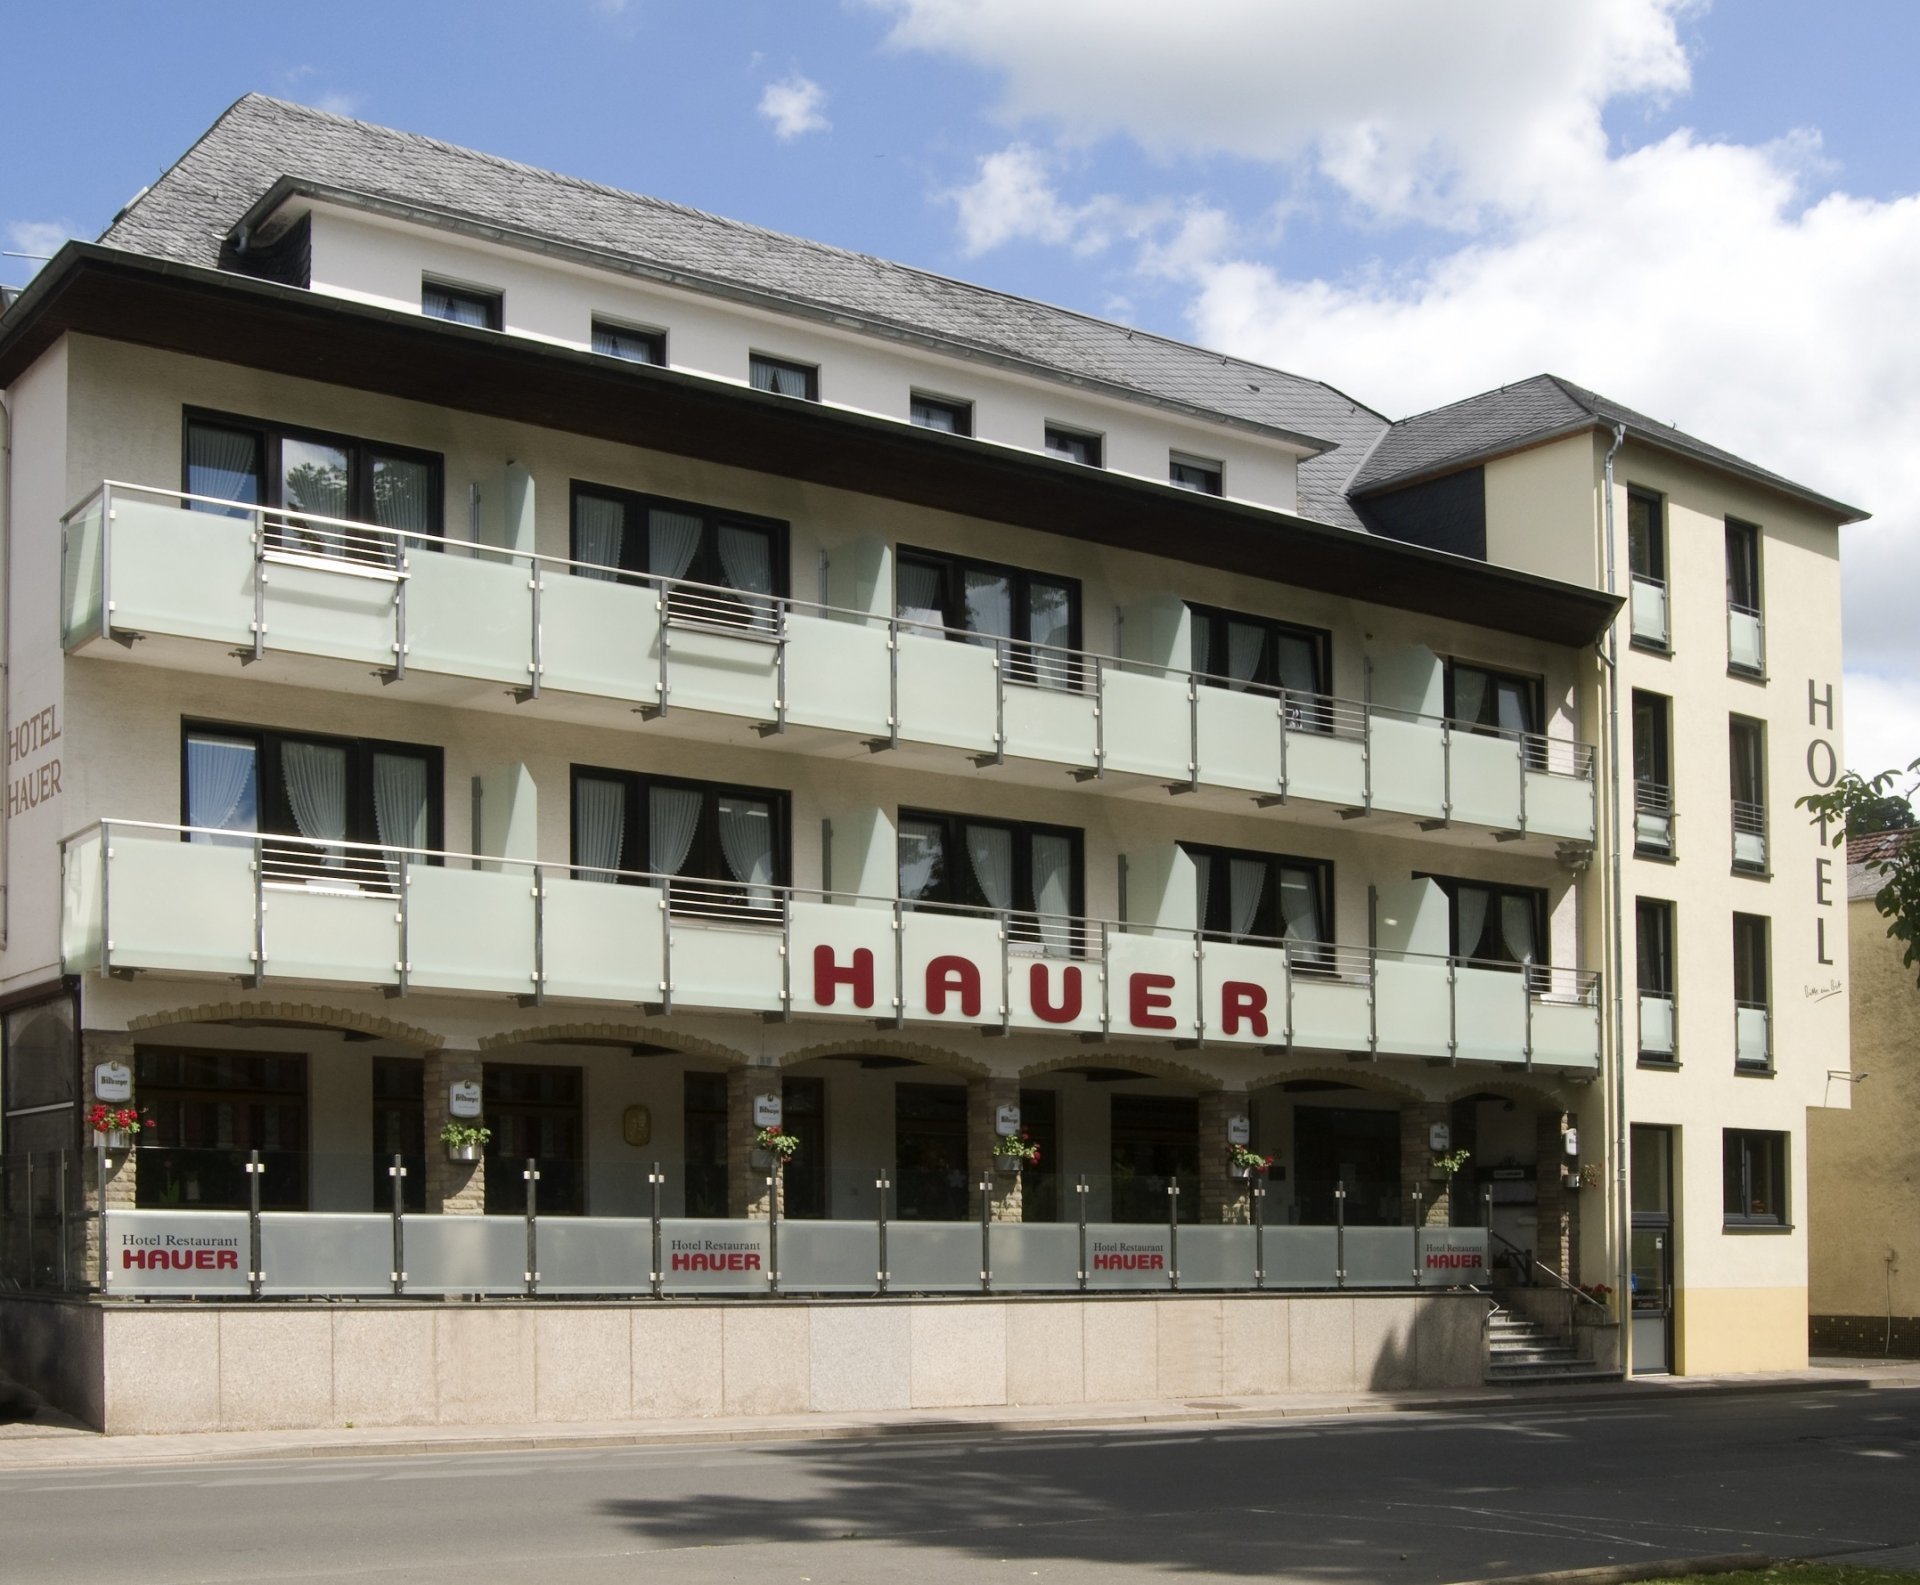 4 Tage Pfingsten Kurzurlaub – Hotel Hauer (3 Sterne) in Bollendorf, Rheinland-Pfalz inkl. Halbpension